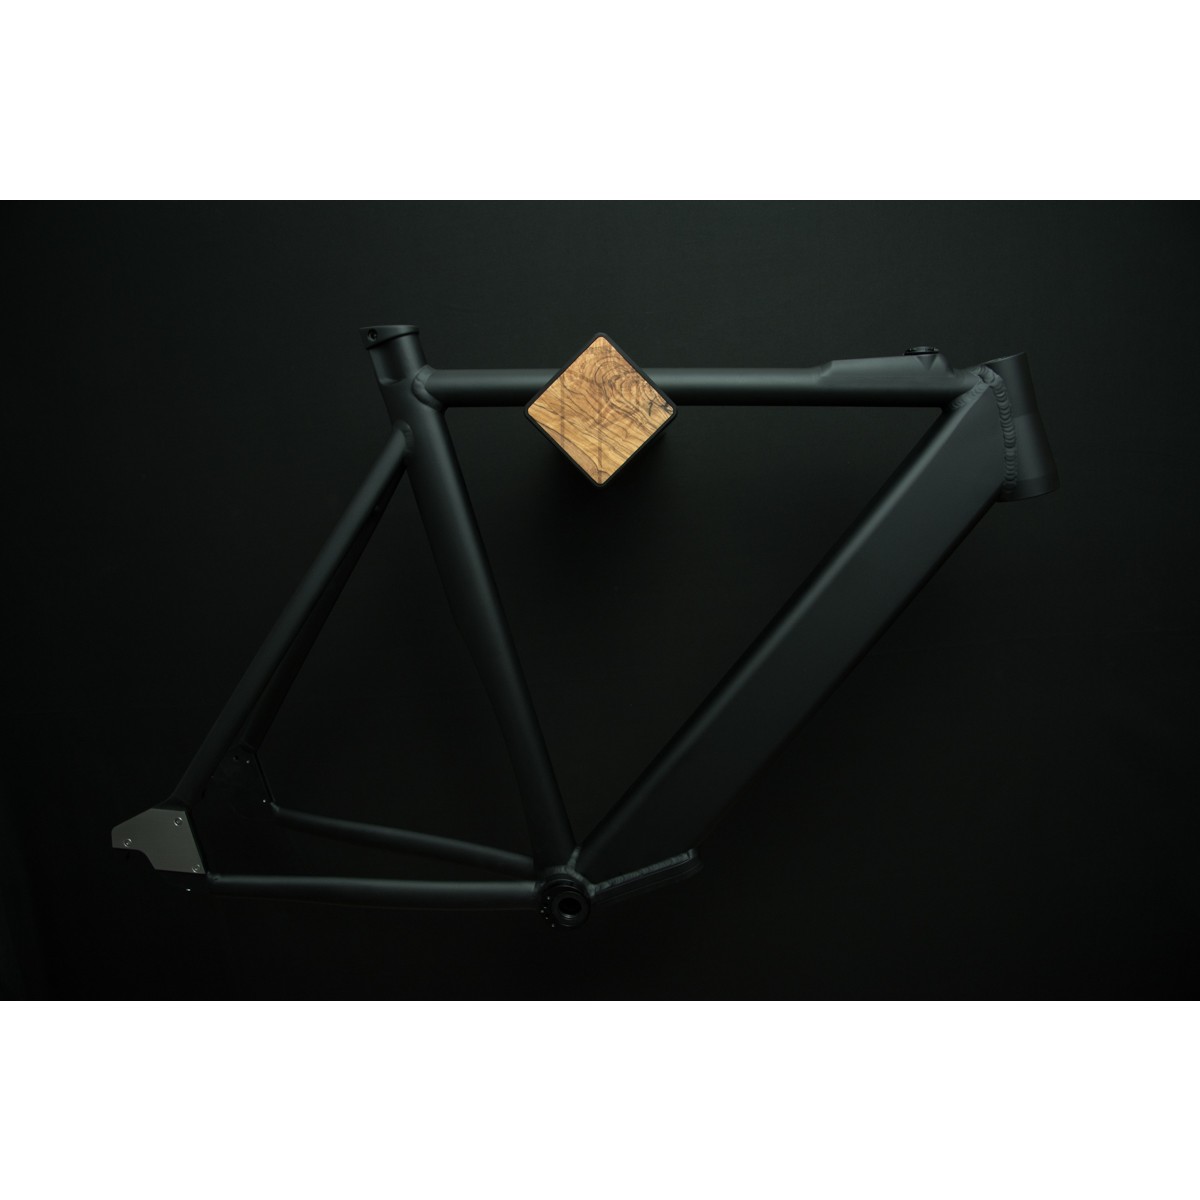 Stilvolle Design Fahrrad Wandhalterung | PARAX® D-RACK | für Rennrad, Hardtail, Cityrad & Tourenrad | Schwarz mit Oliven Holz